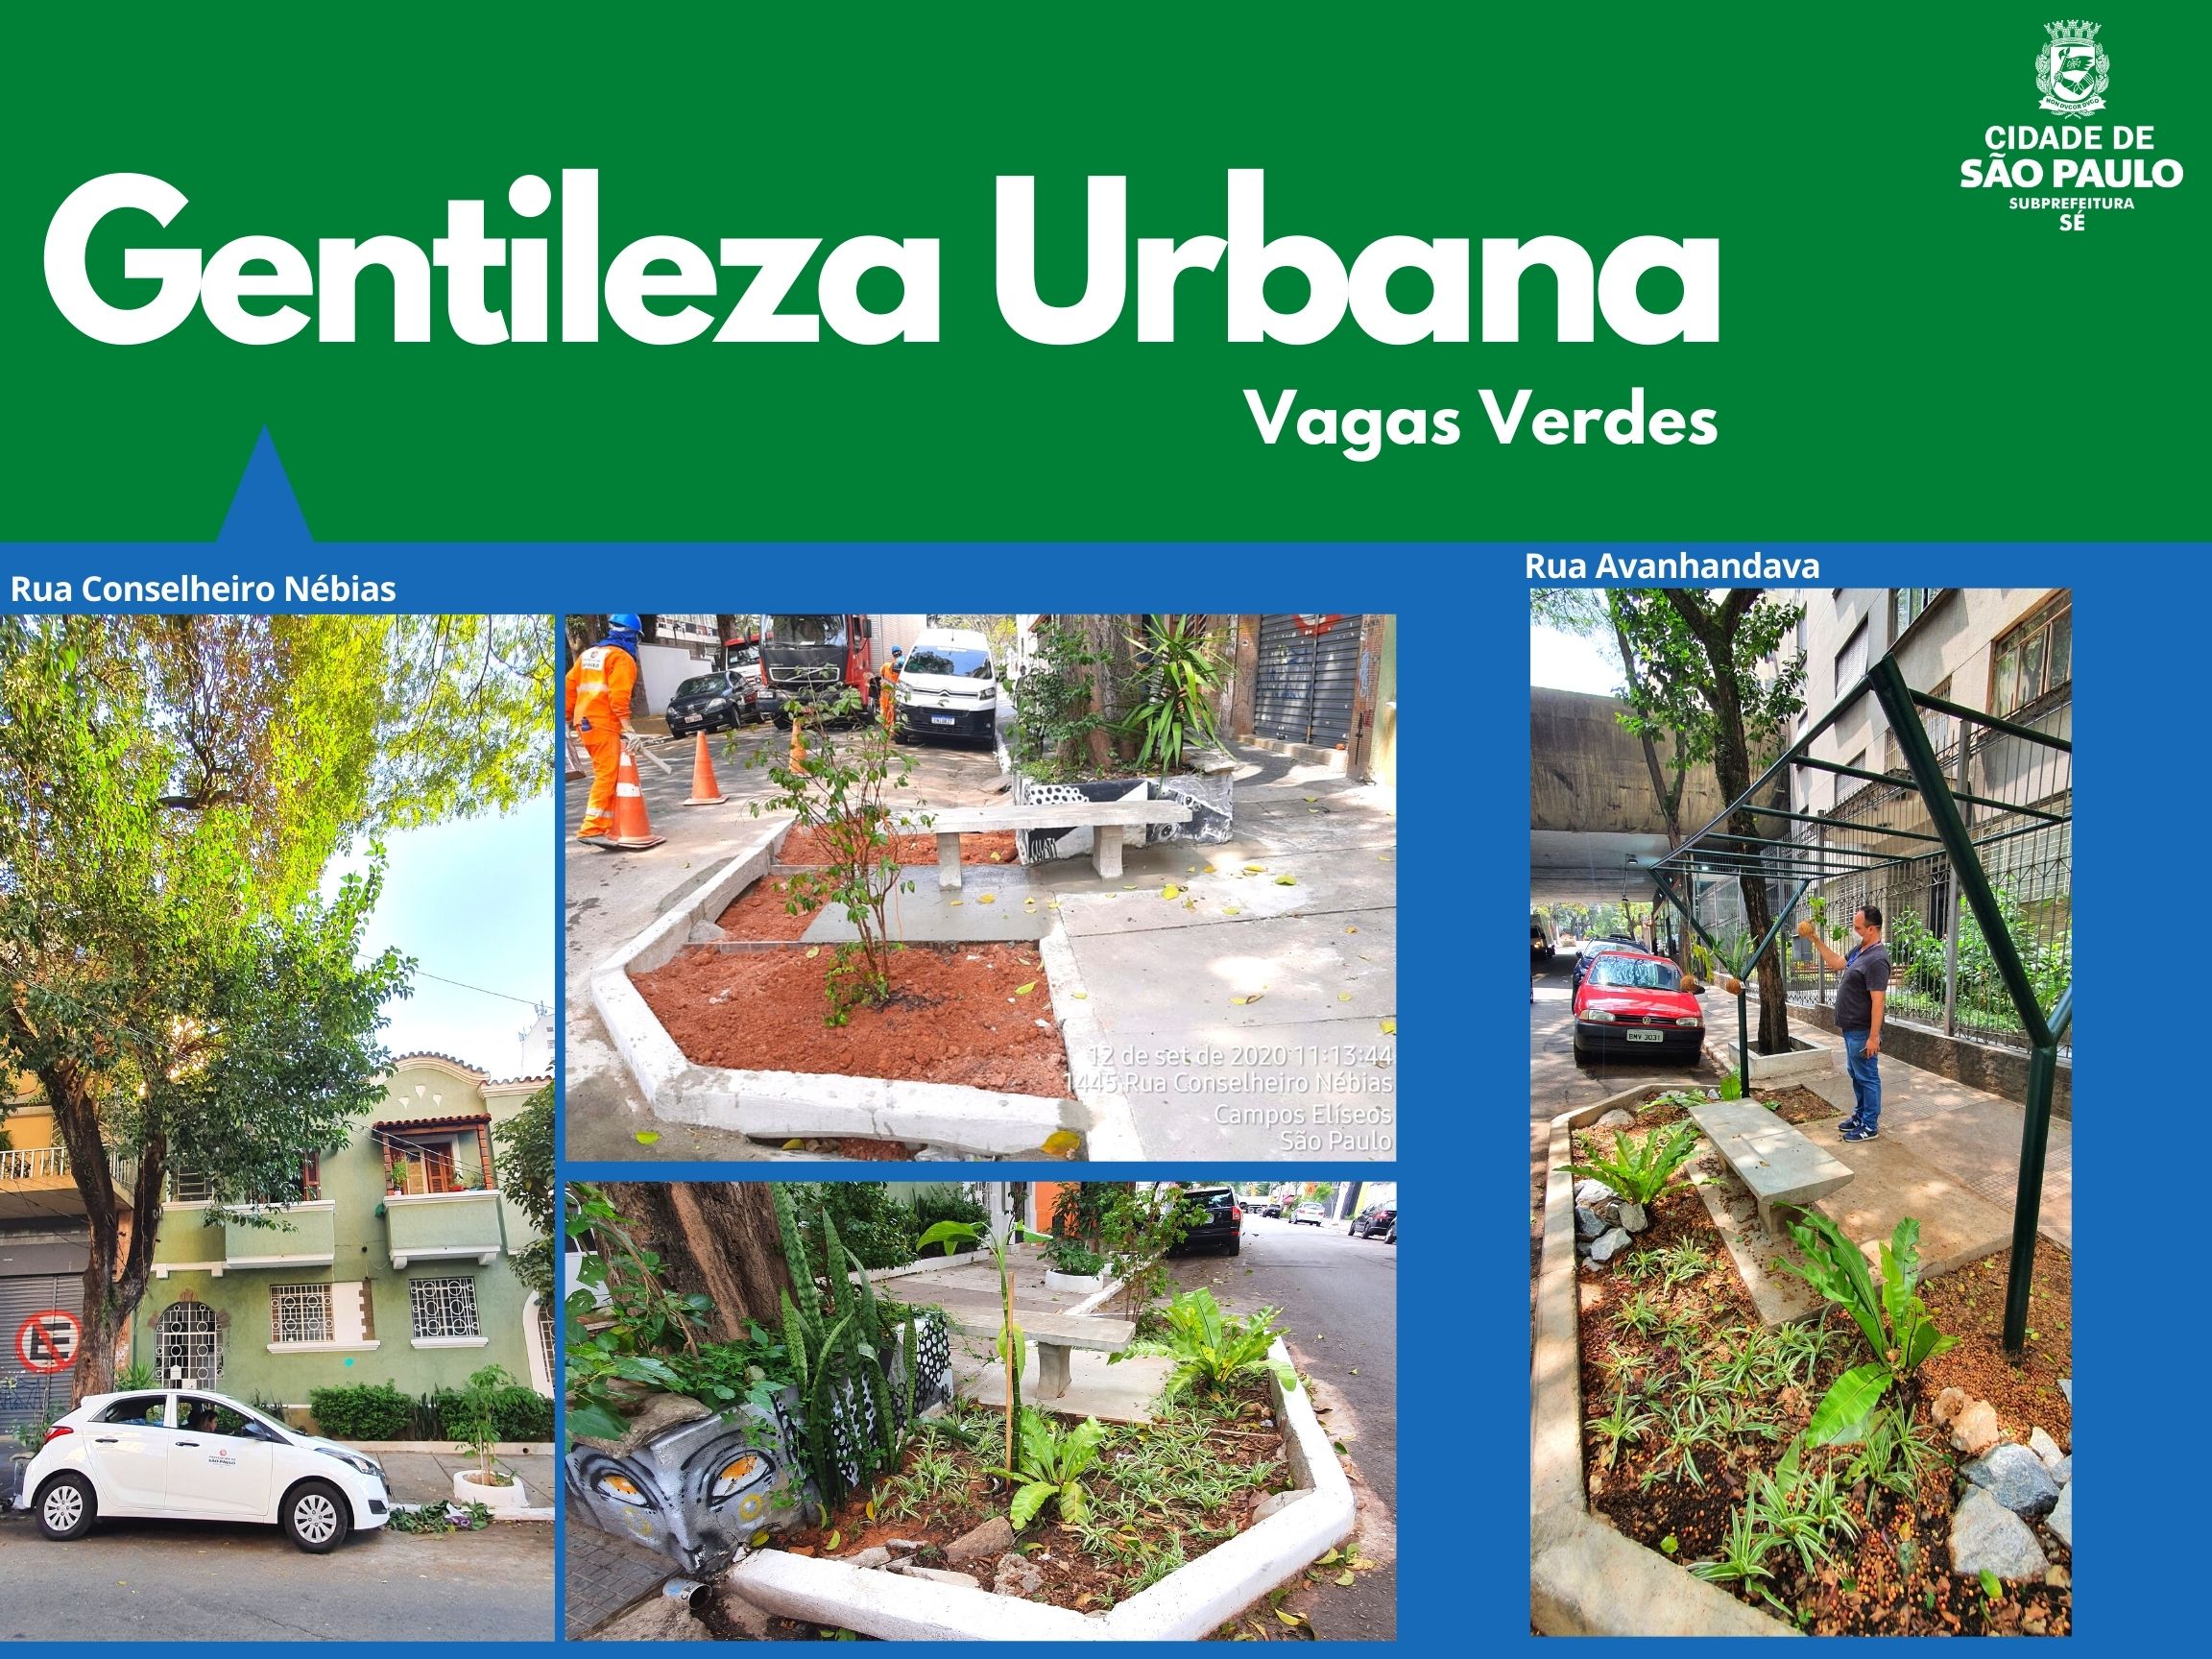 Arte escrito Gentileza Urbana com o logotipo da subprefeitura Sé mostra vagas verdes na rua conselheiro nébias e rua avanhandava